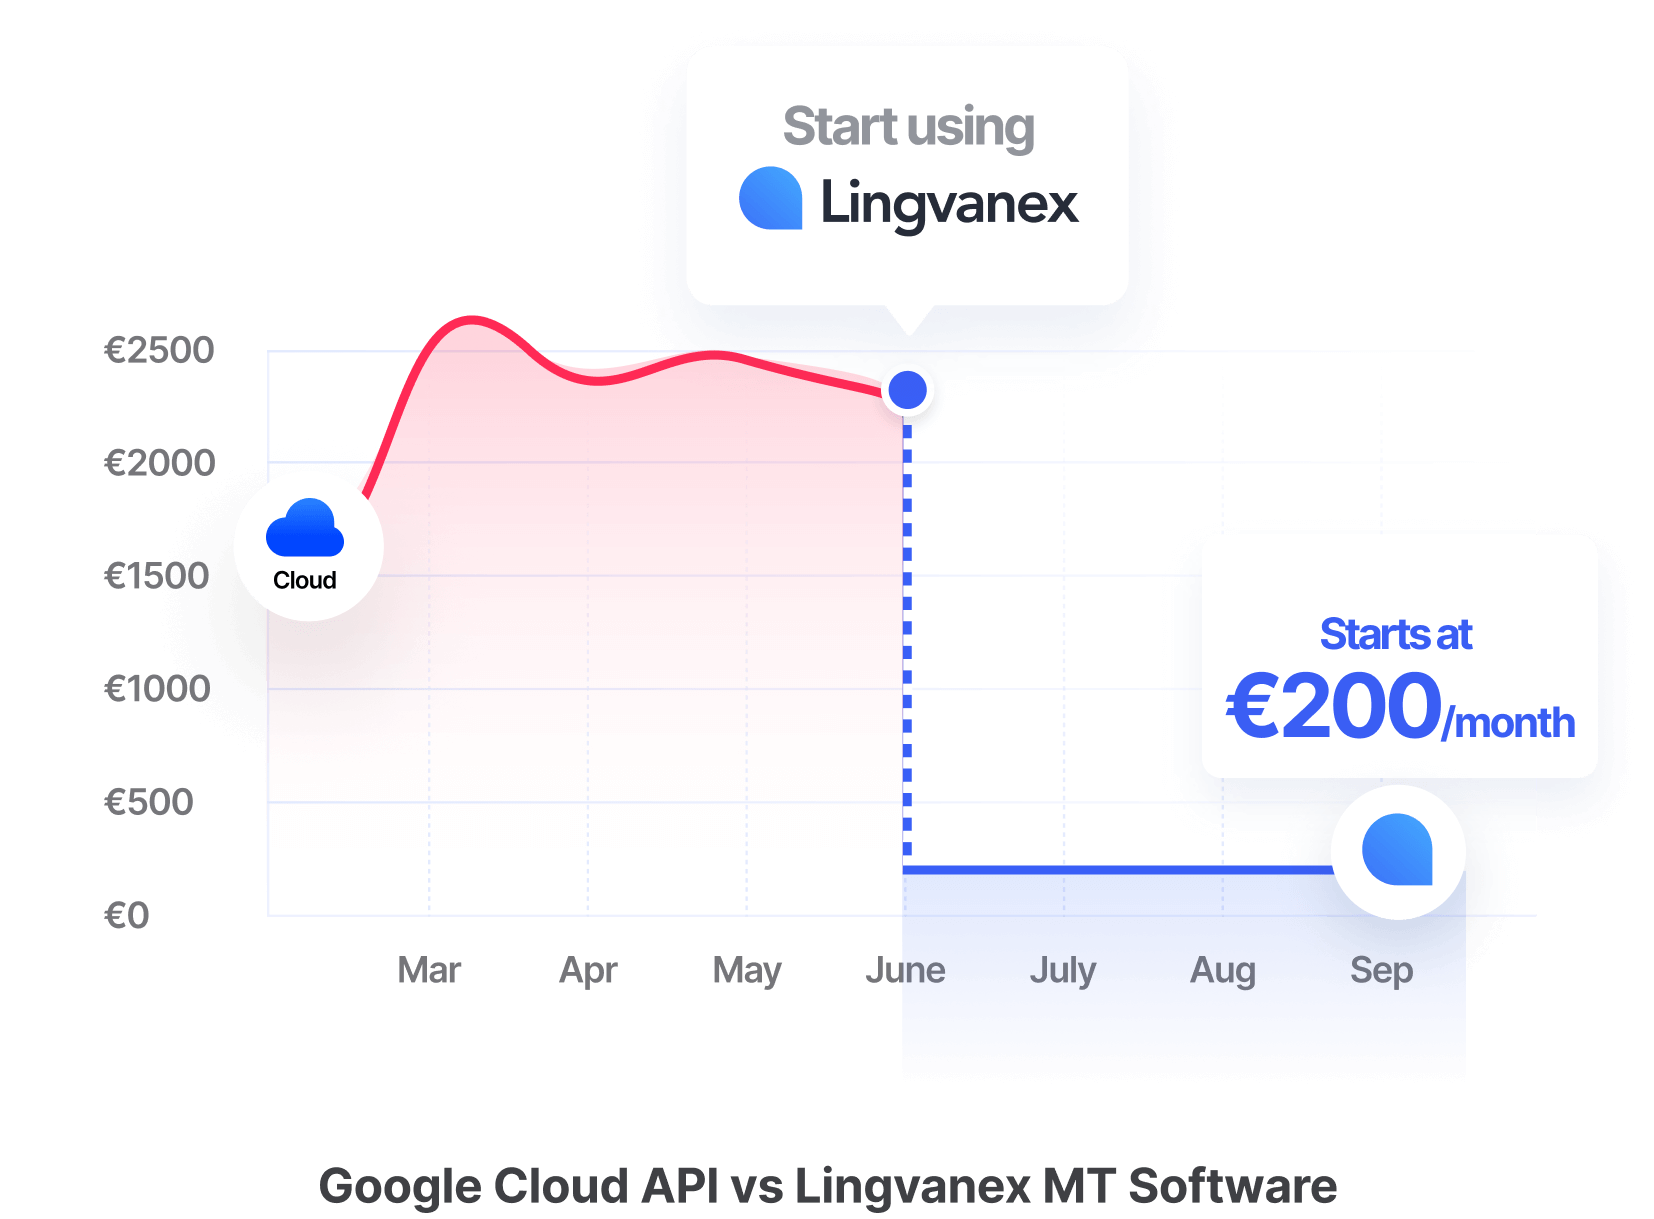 Google Cloud API versus Lingvanex MT-software